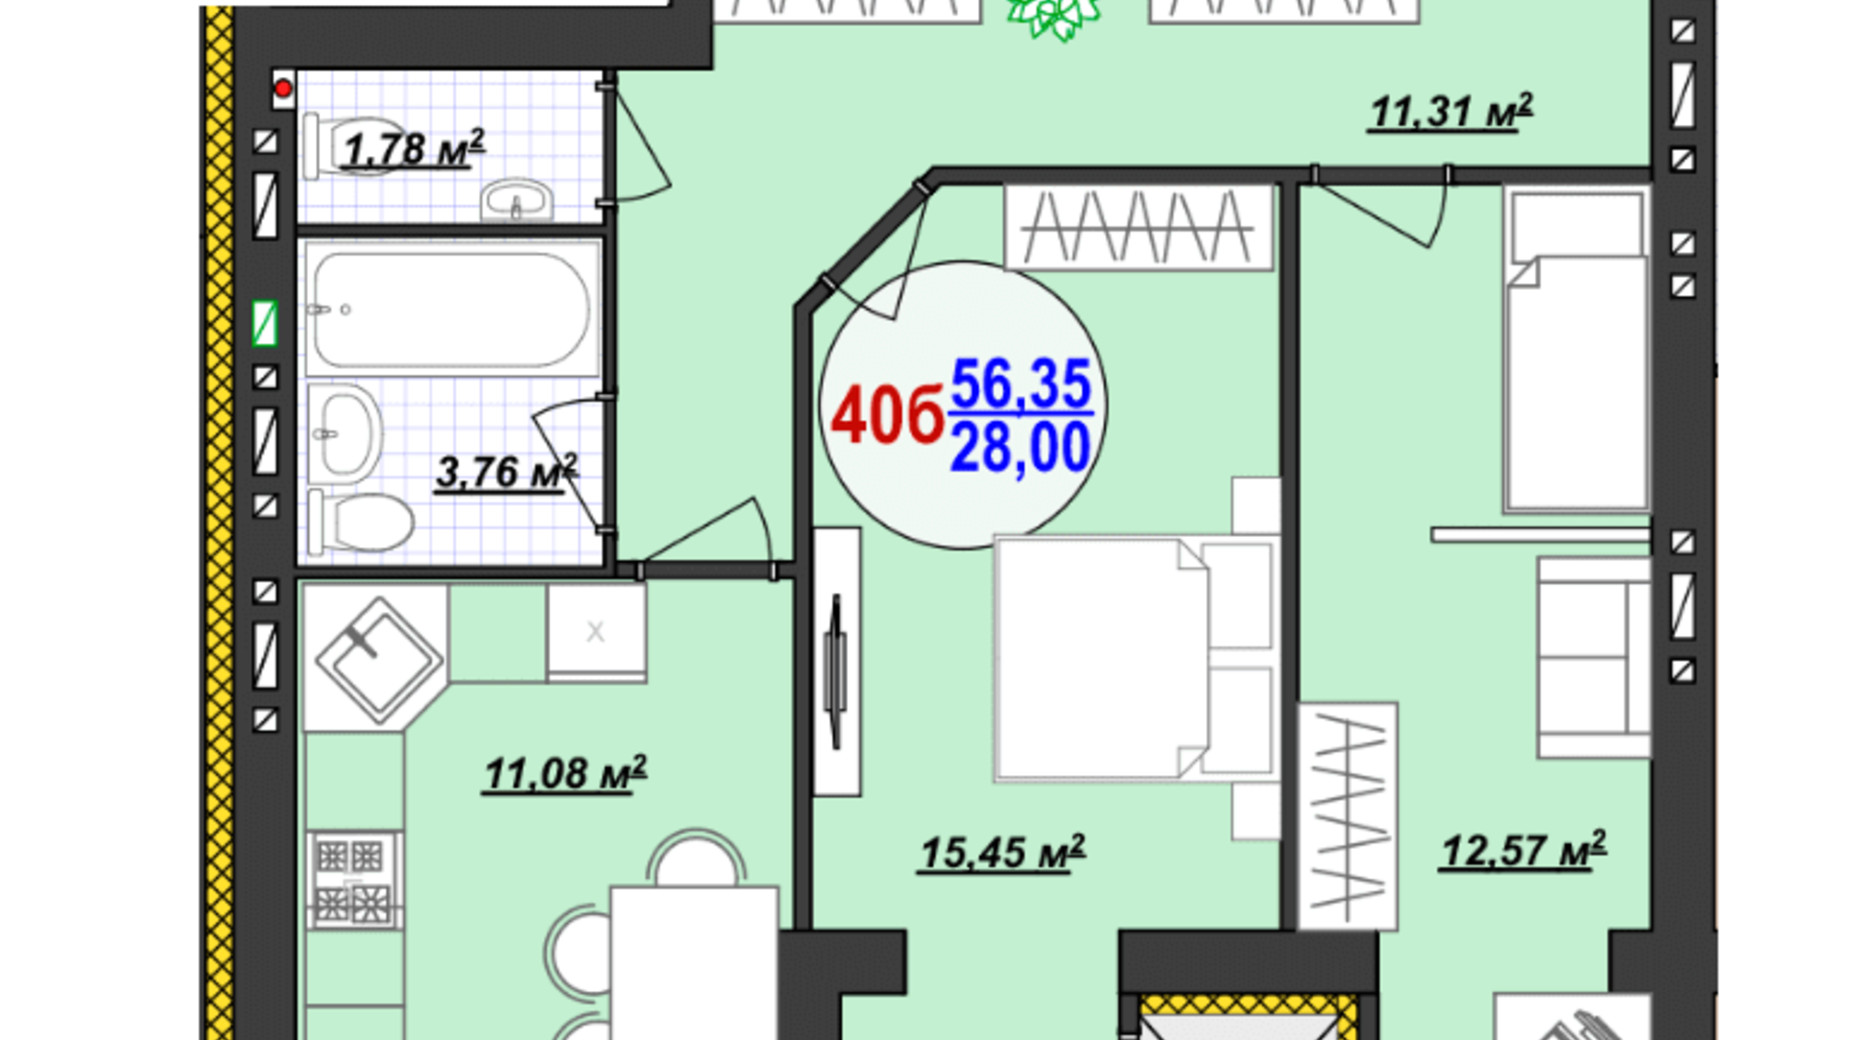 Планировка 2-комнатной квартиры в ЖК Кемпинг Сити 56.35 м², фото 561209